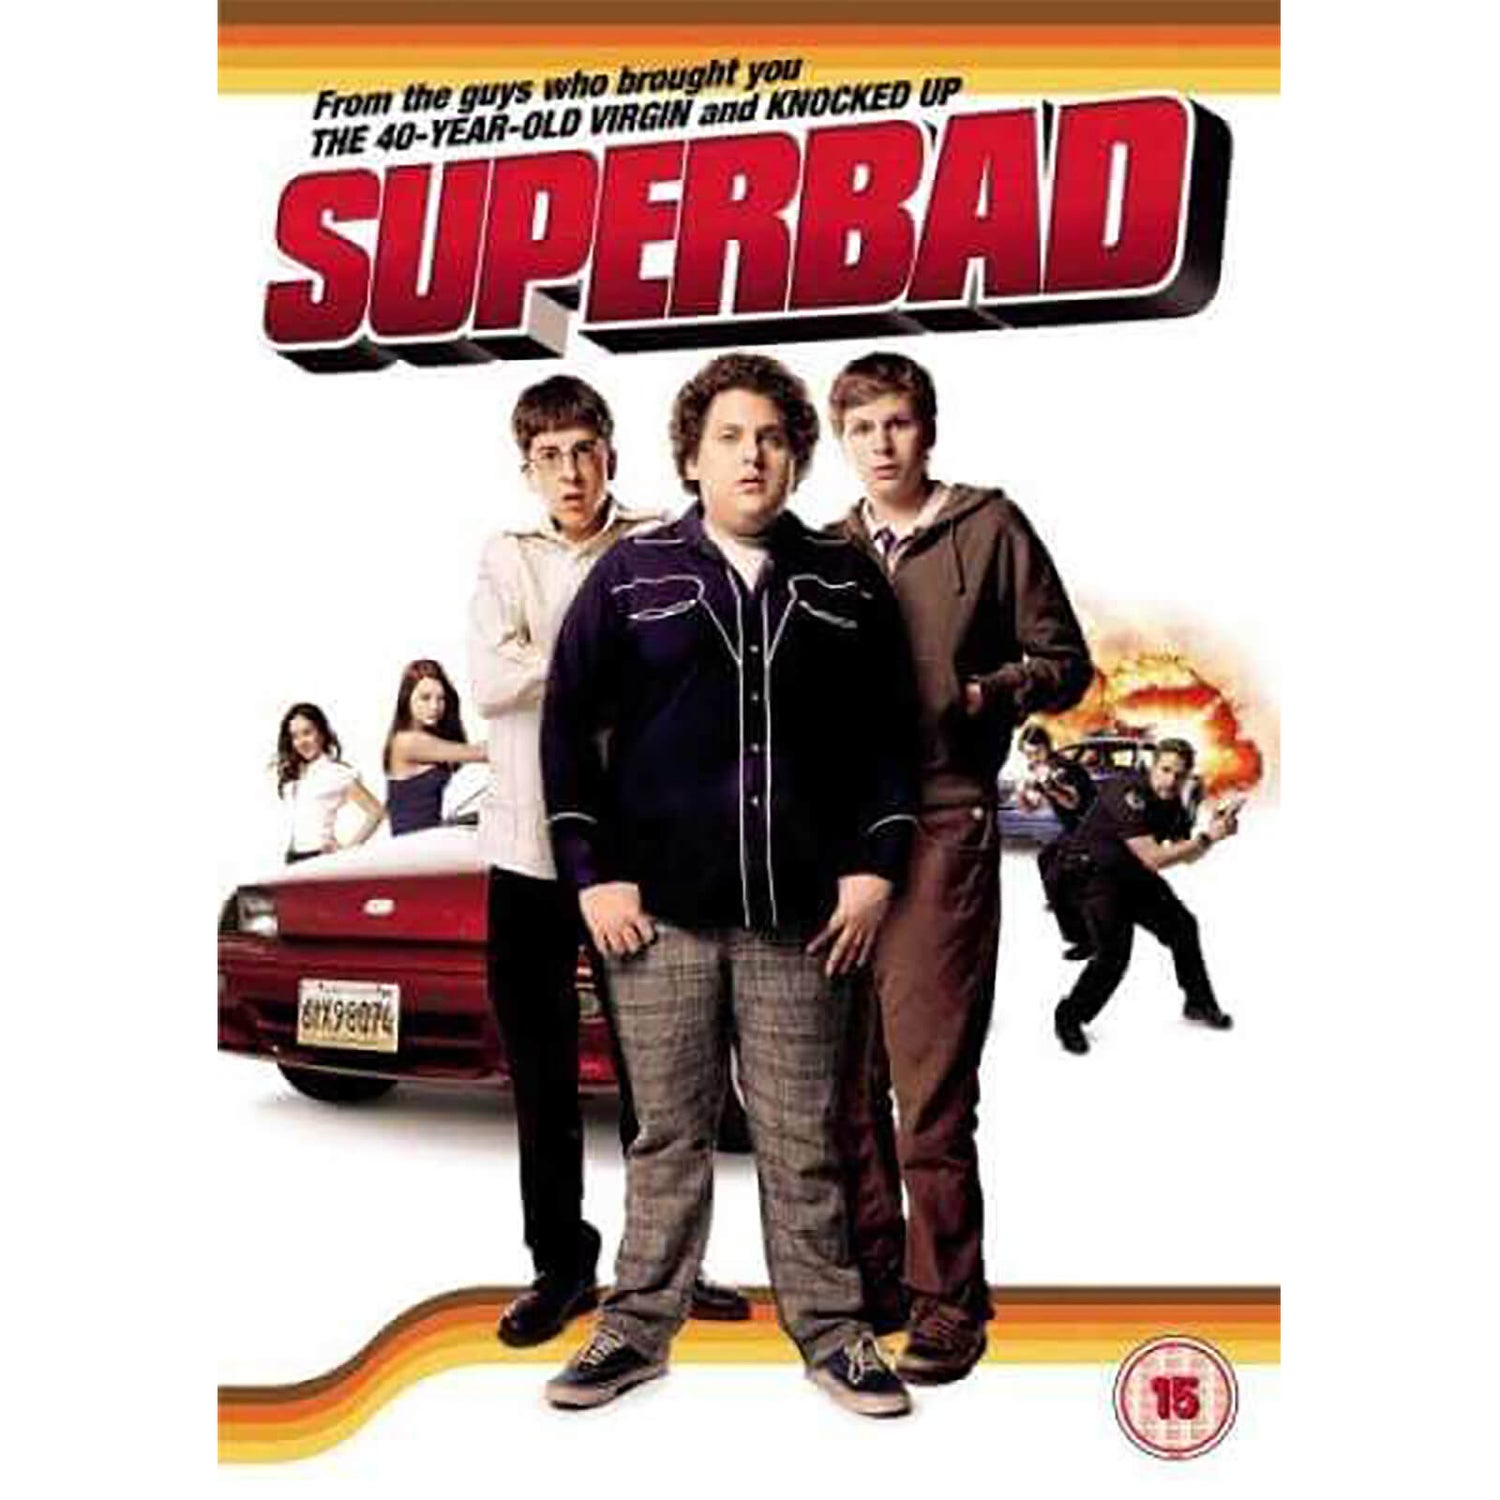 Superbad [Theatrical Cut]